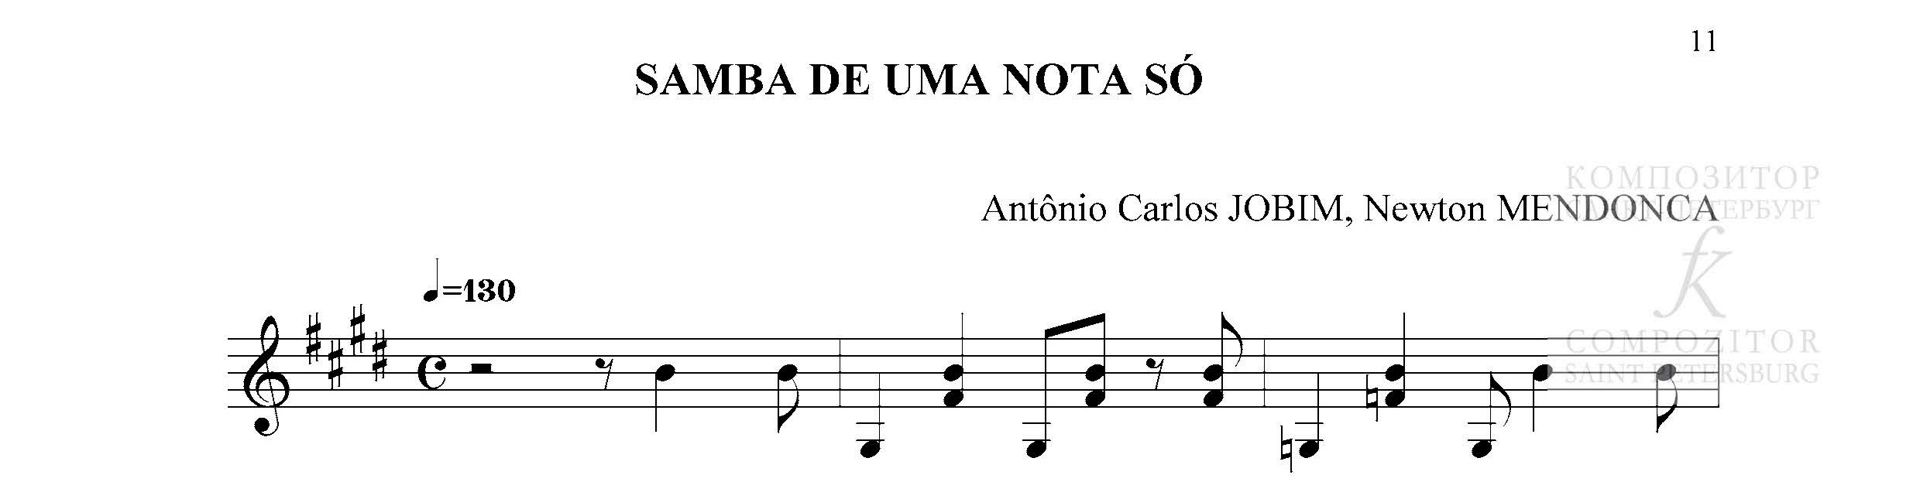 Antônio Carlos Jobim, Newton Mendonca. SAMBA DE UMA NOTA SÓ . Переложения для гитары